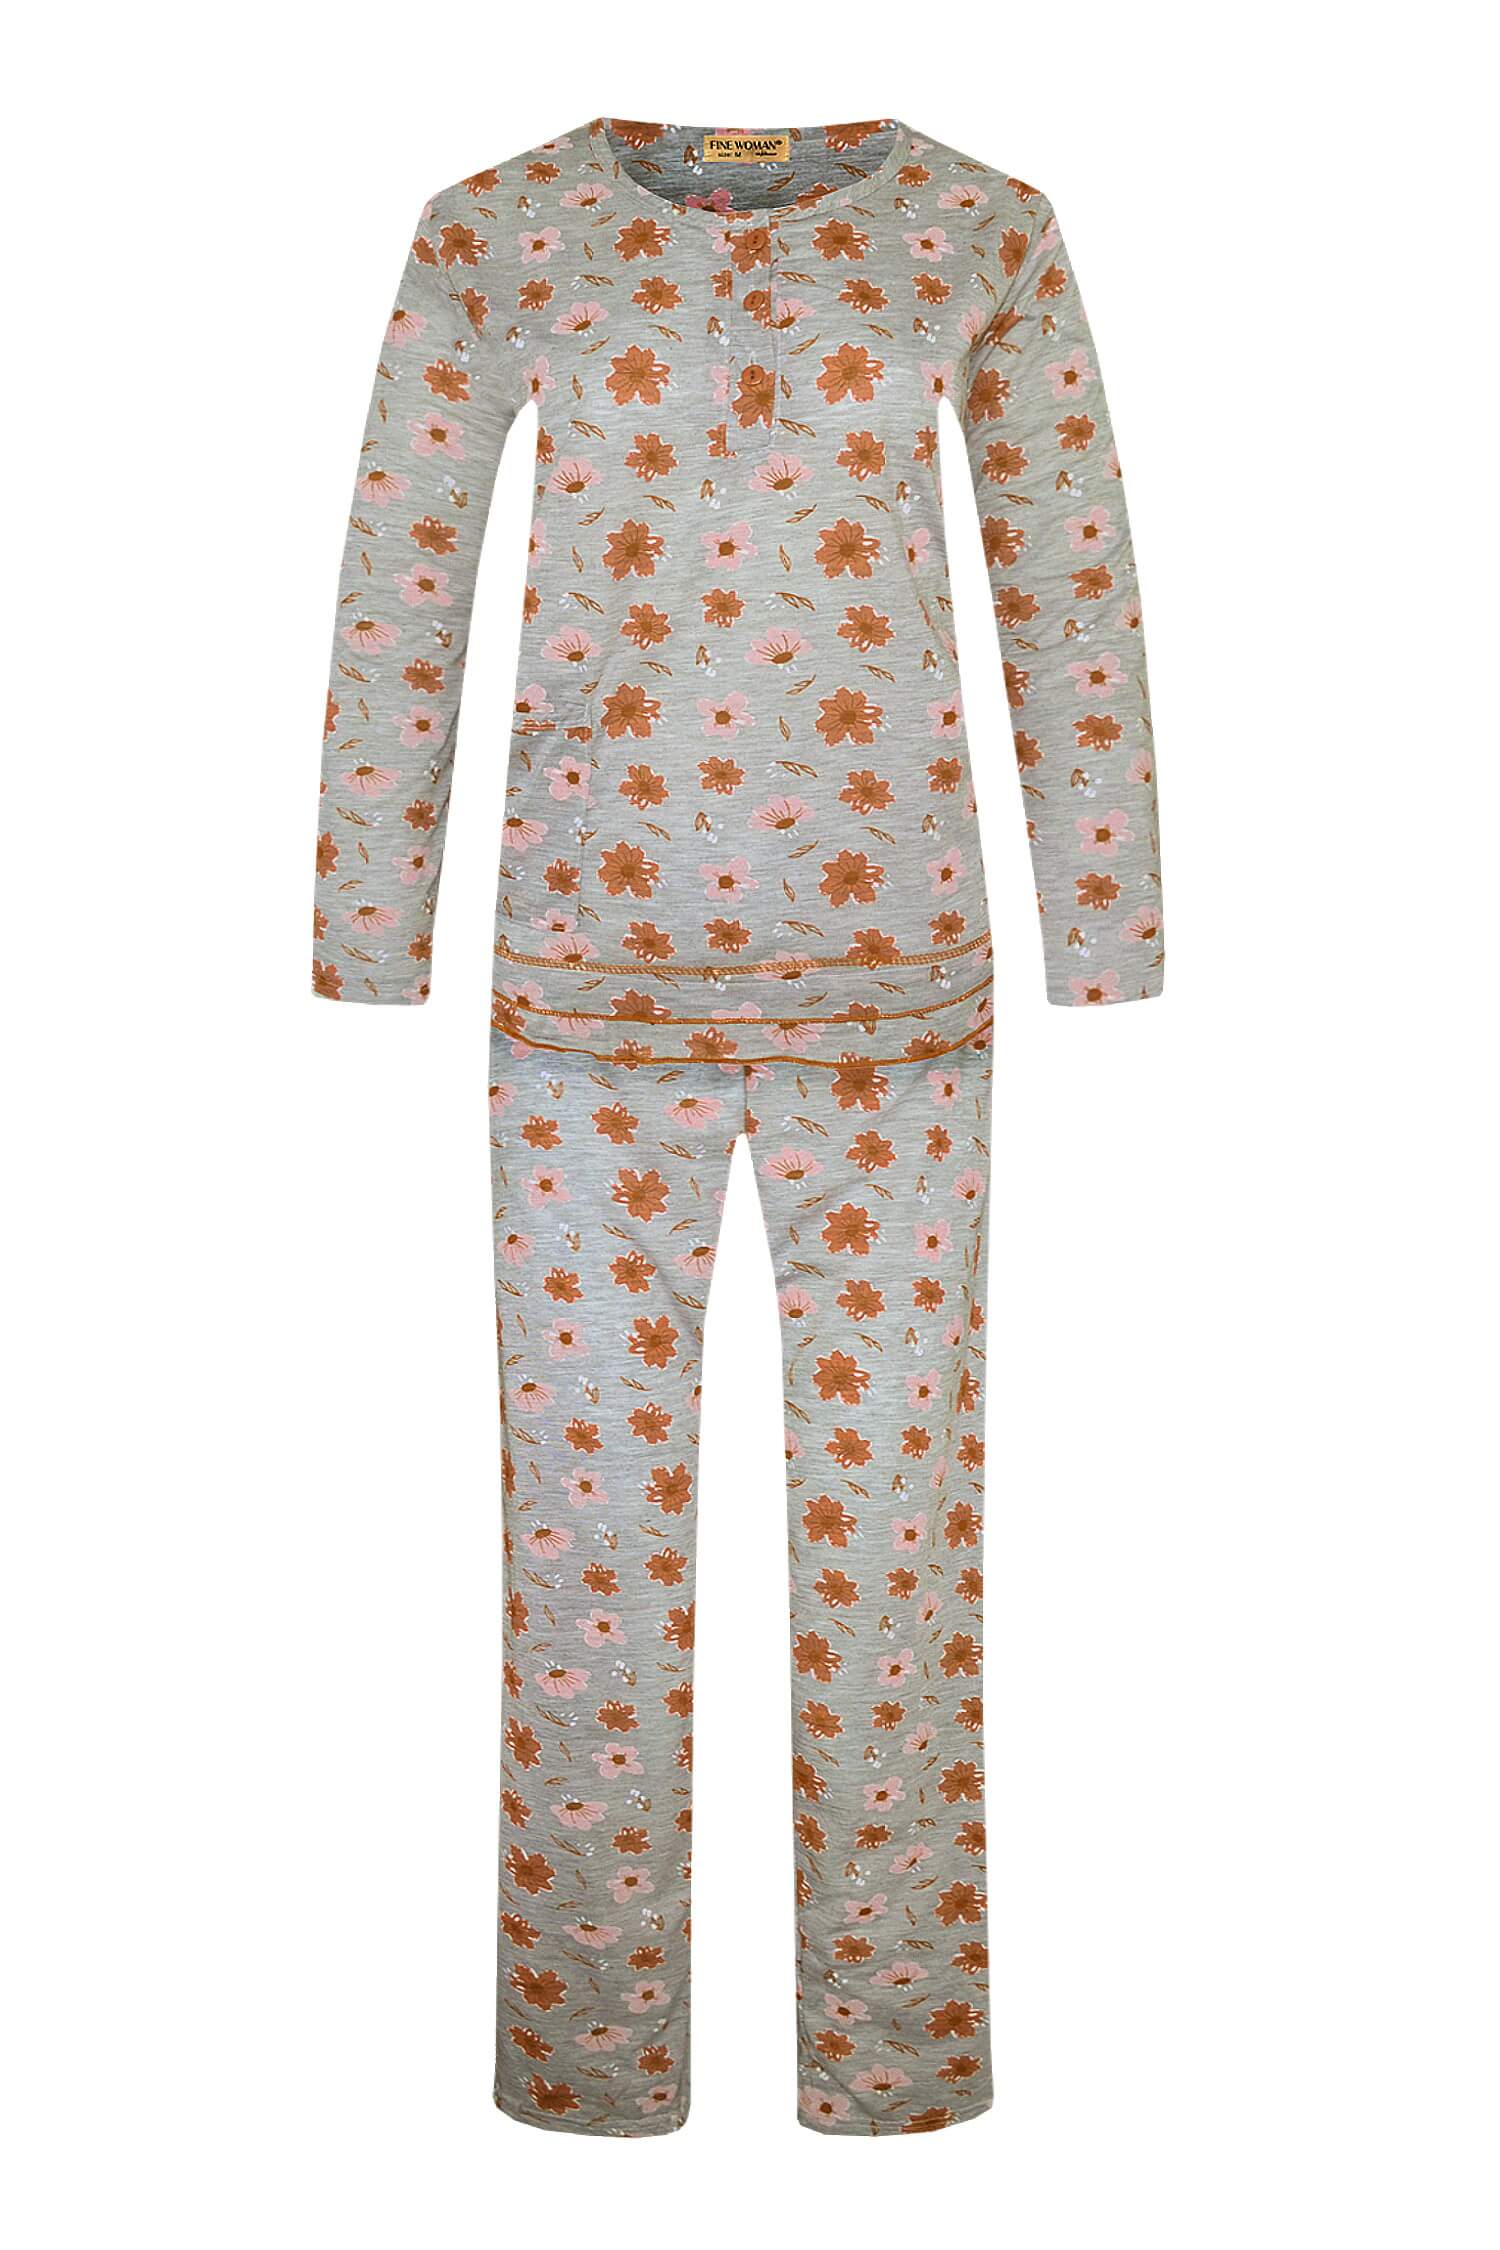 Arenda dámské dlouhé pyžamo 2297 XXL oranžová